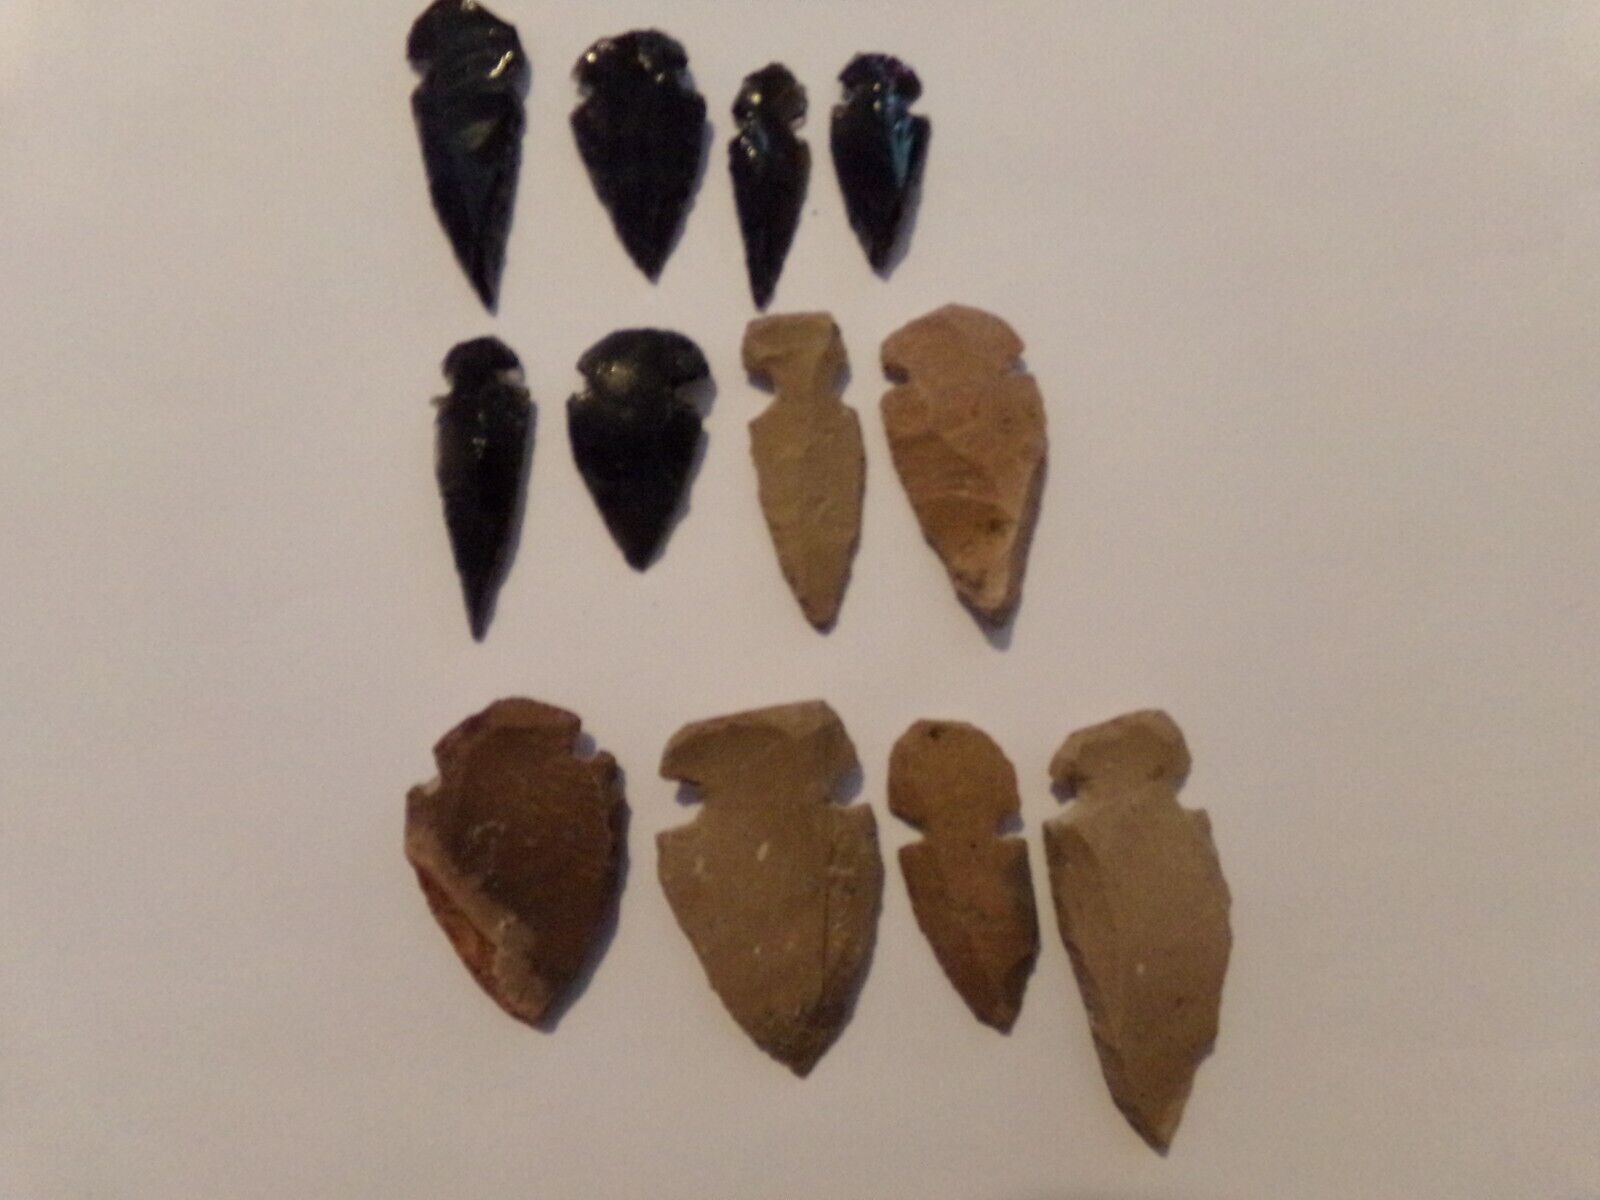 50 stone or obsidian arrowheads bird points replica arrowheads bulk collection